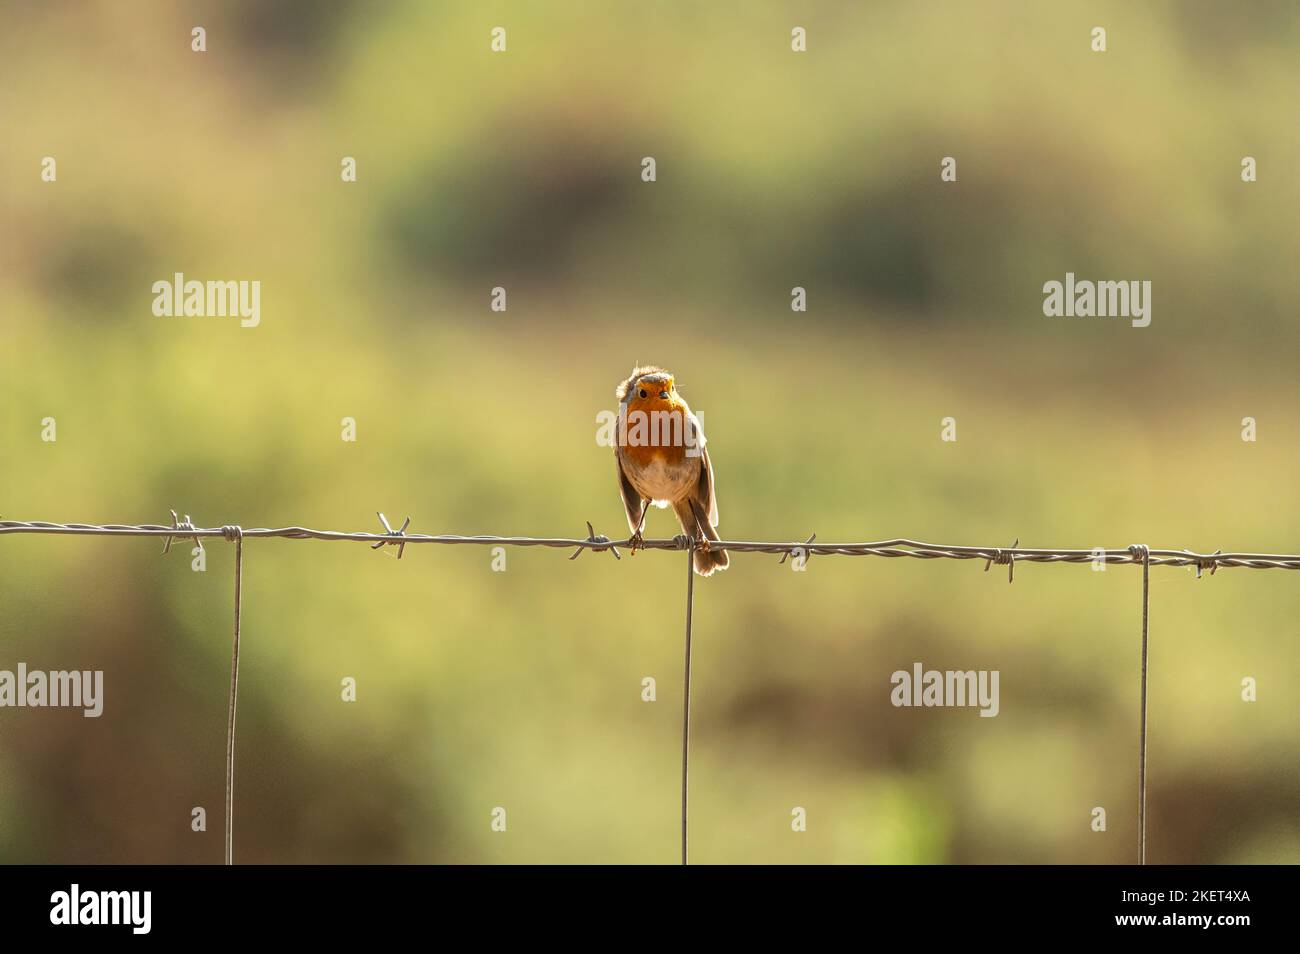 Piccolo robin arroccato sulla cima di una recinzione di filo spinato confine con sfondo morbido a RSPB Arne Foto Stock